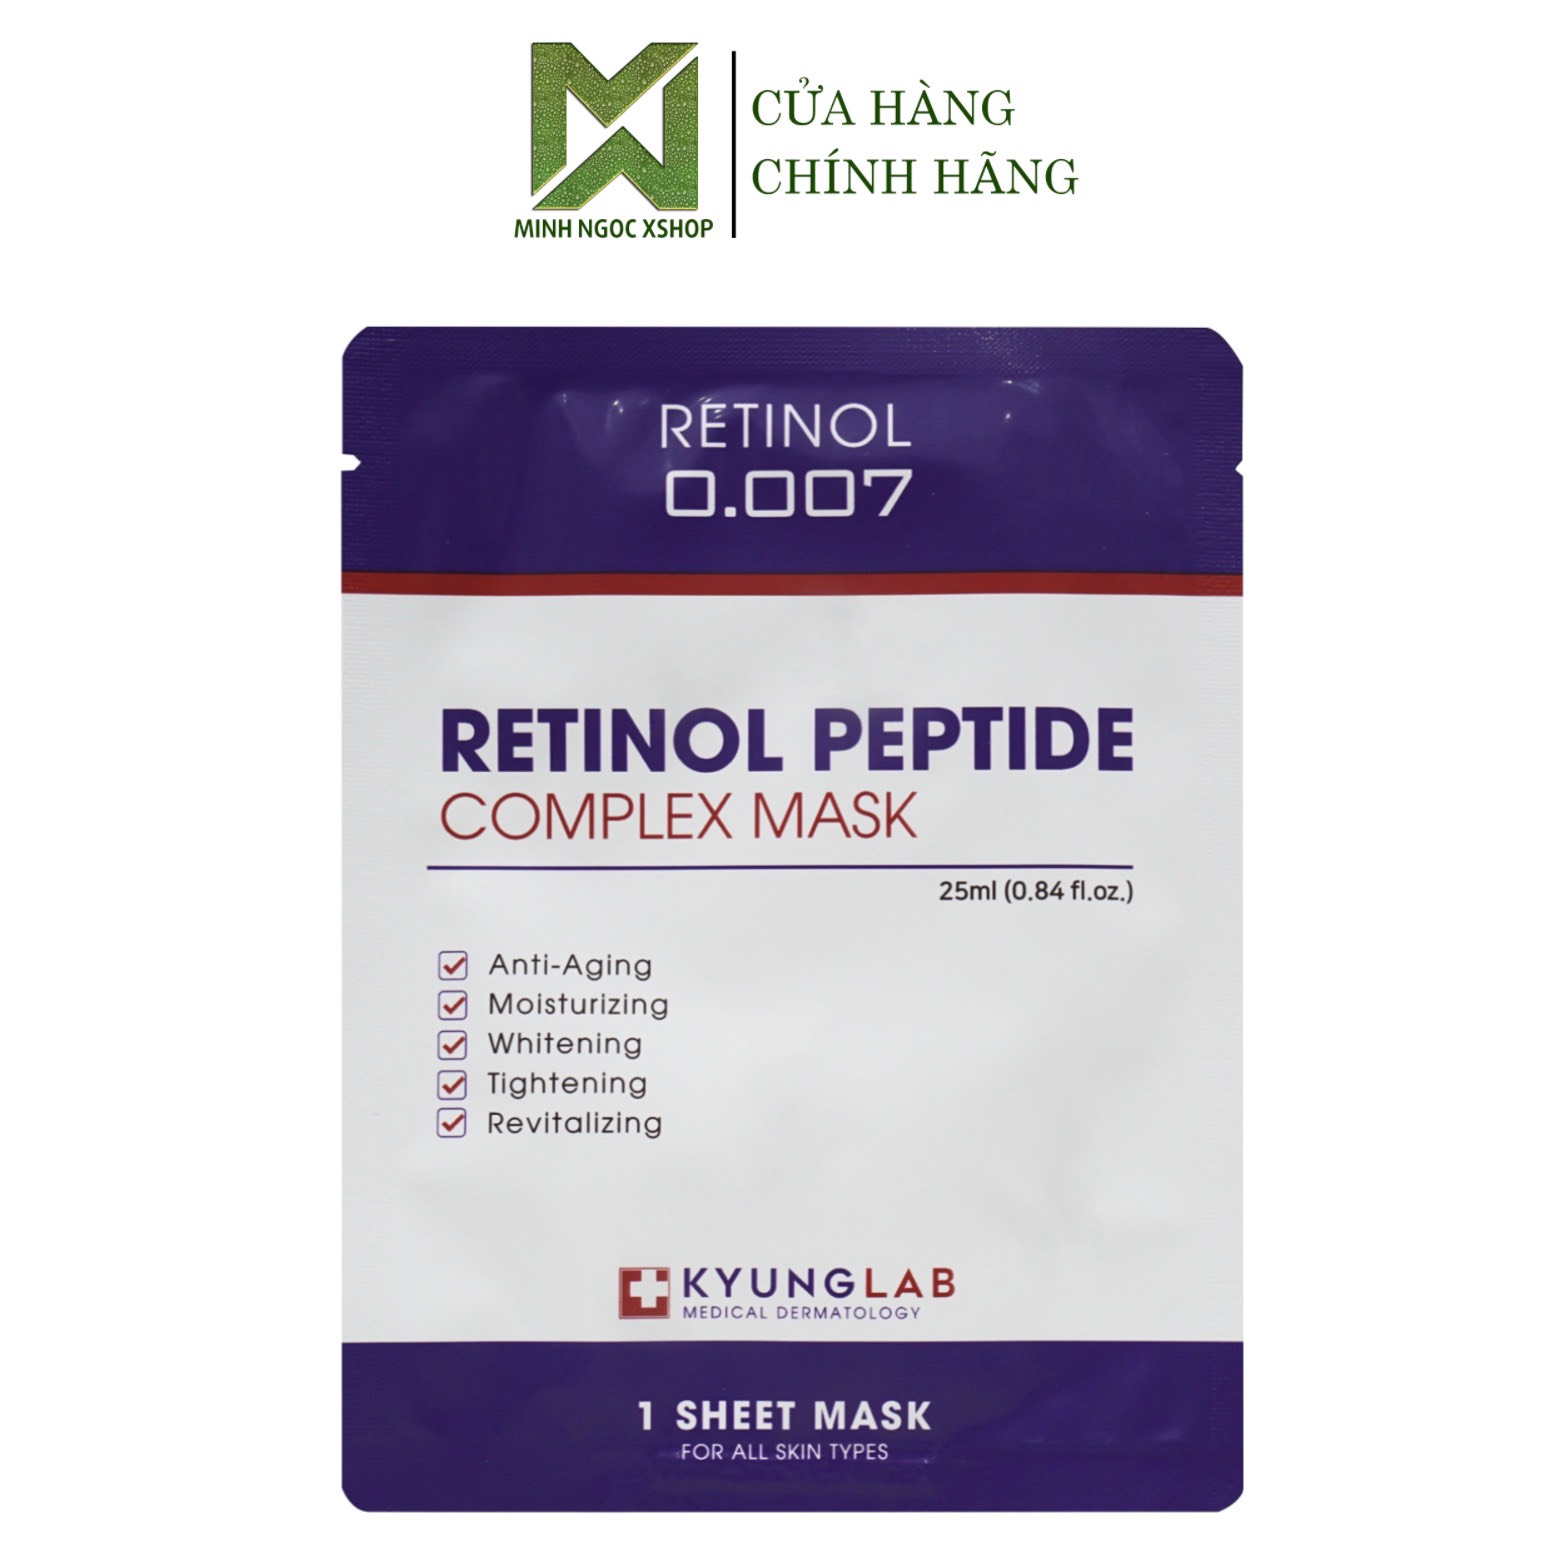 Mặt nạ Retinol KyungLab Peptide Complex Mask 25ml lẻ 1 miếng chính hãng